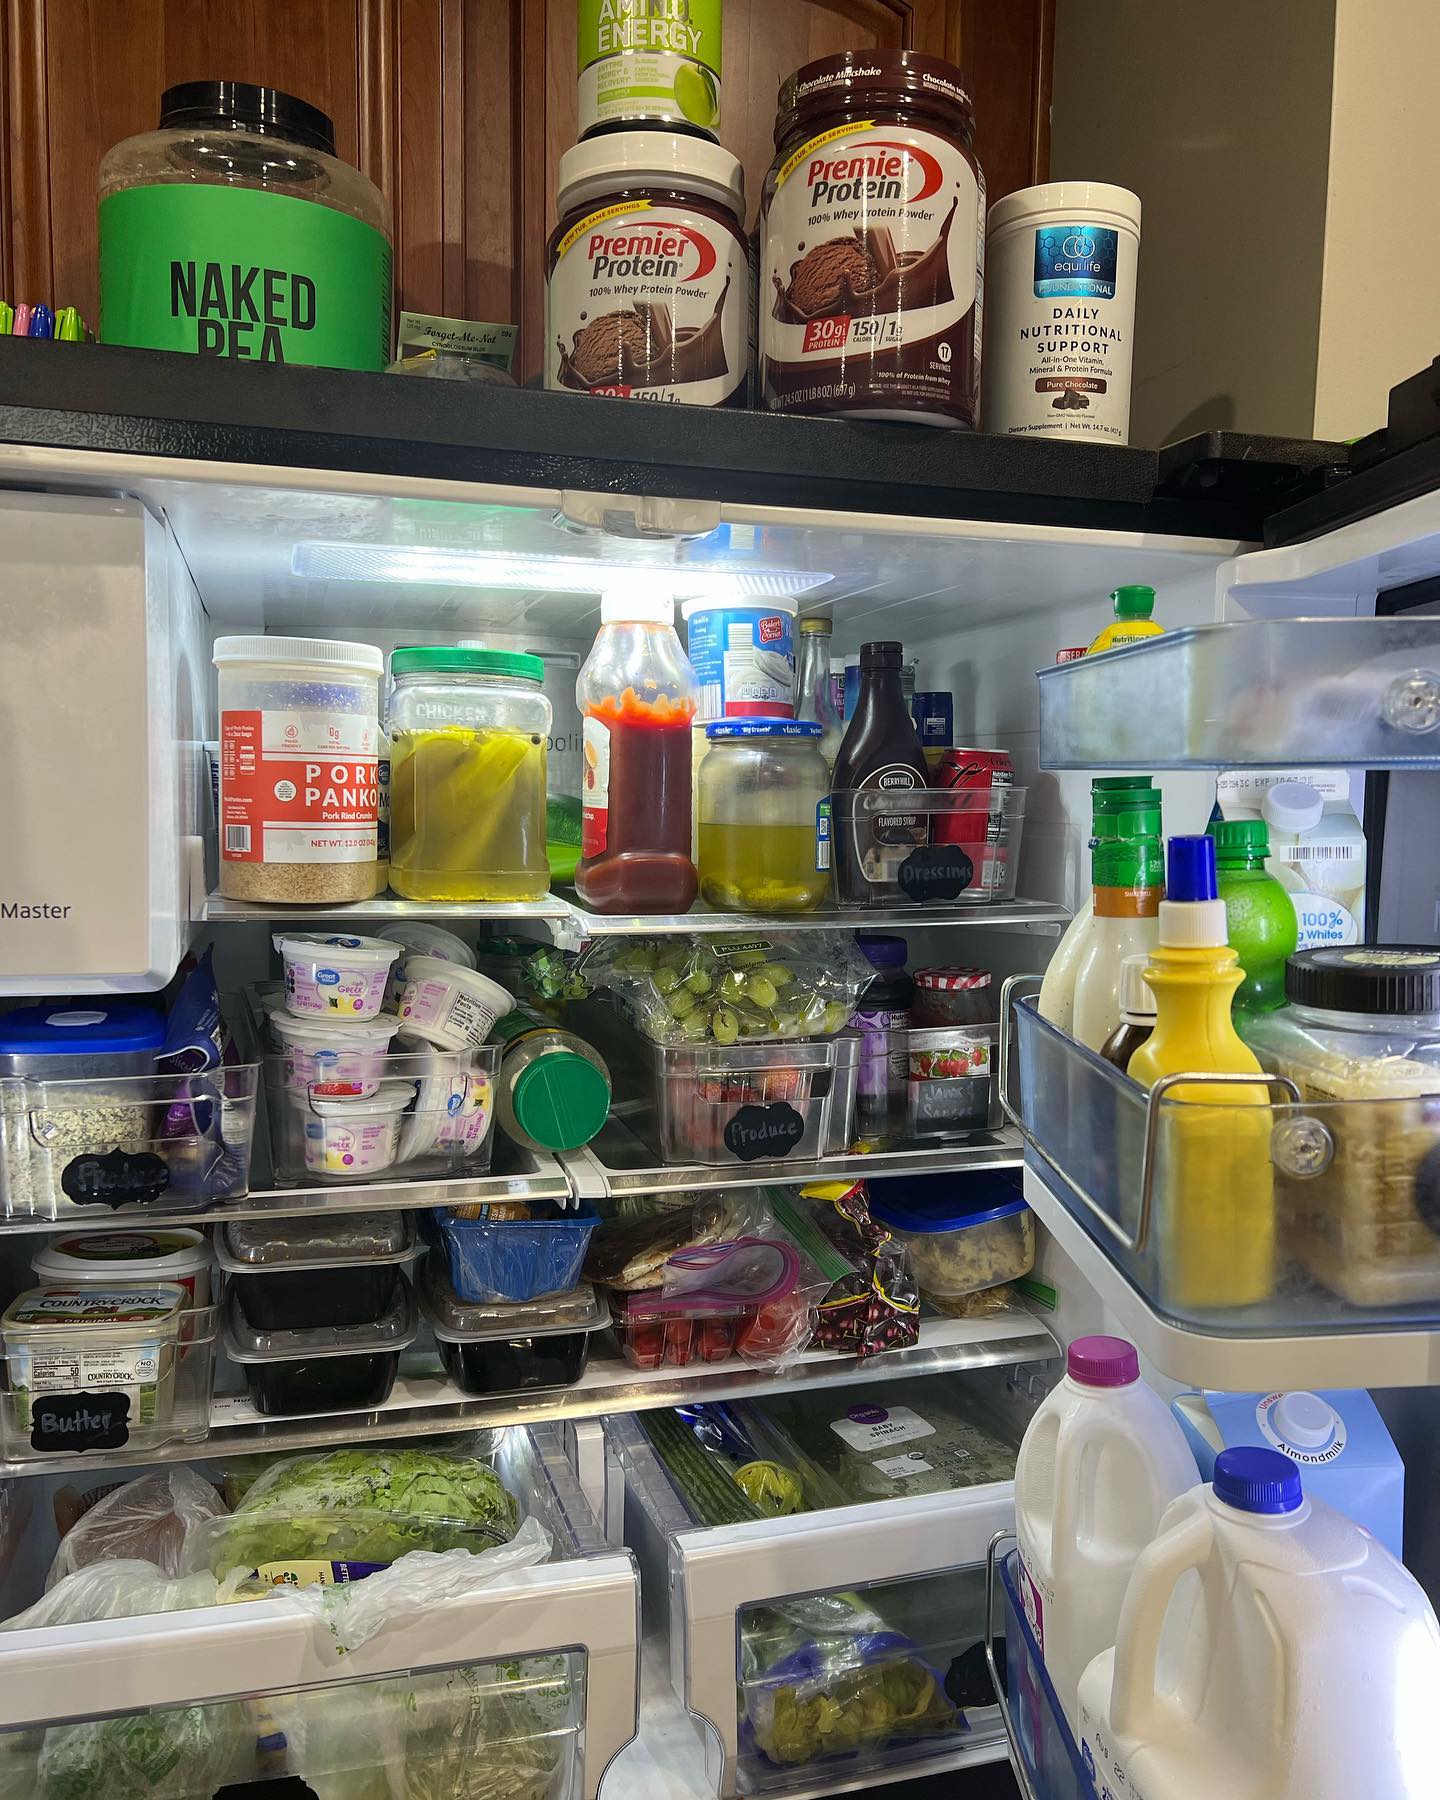 refrigerator full of food